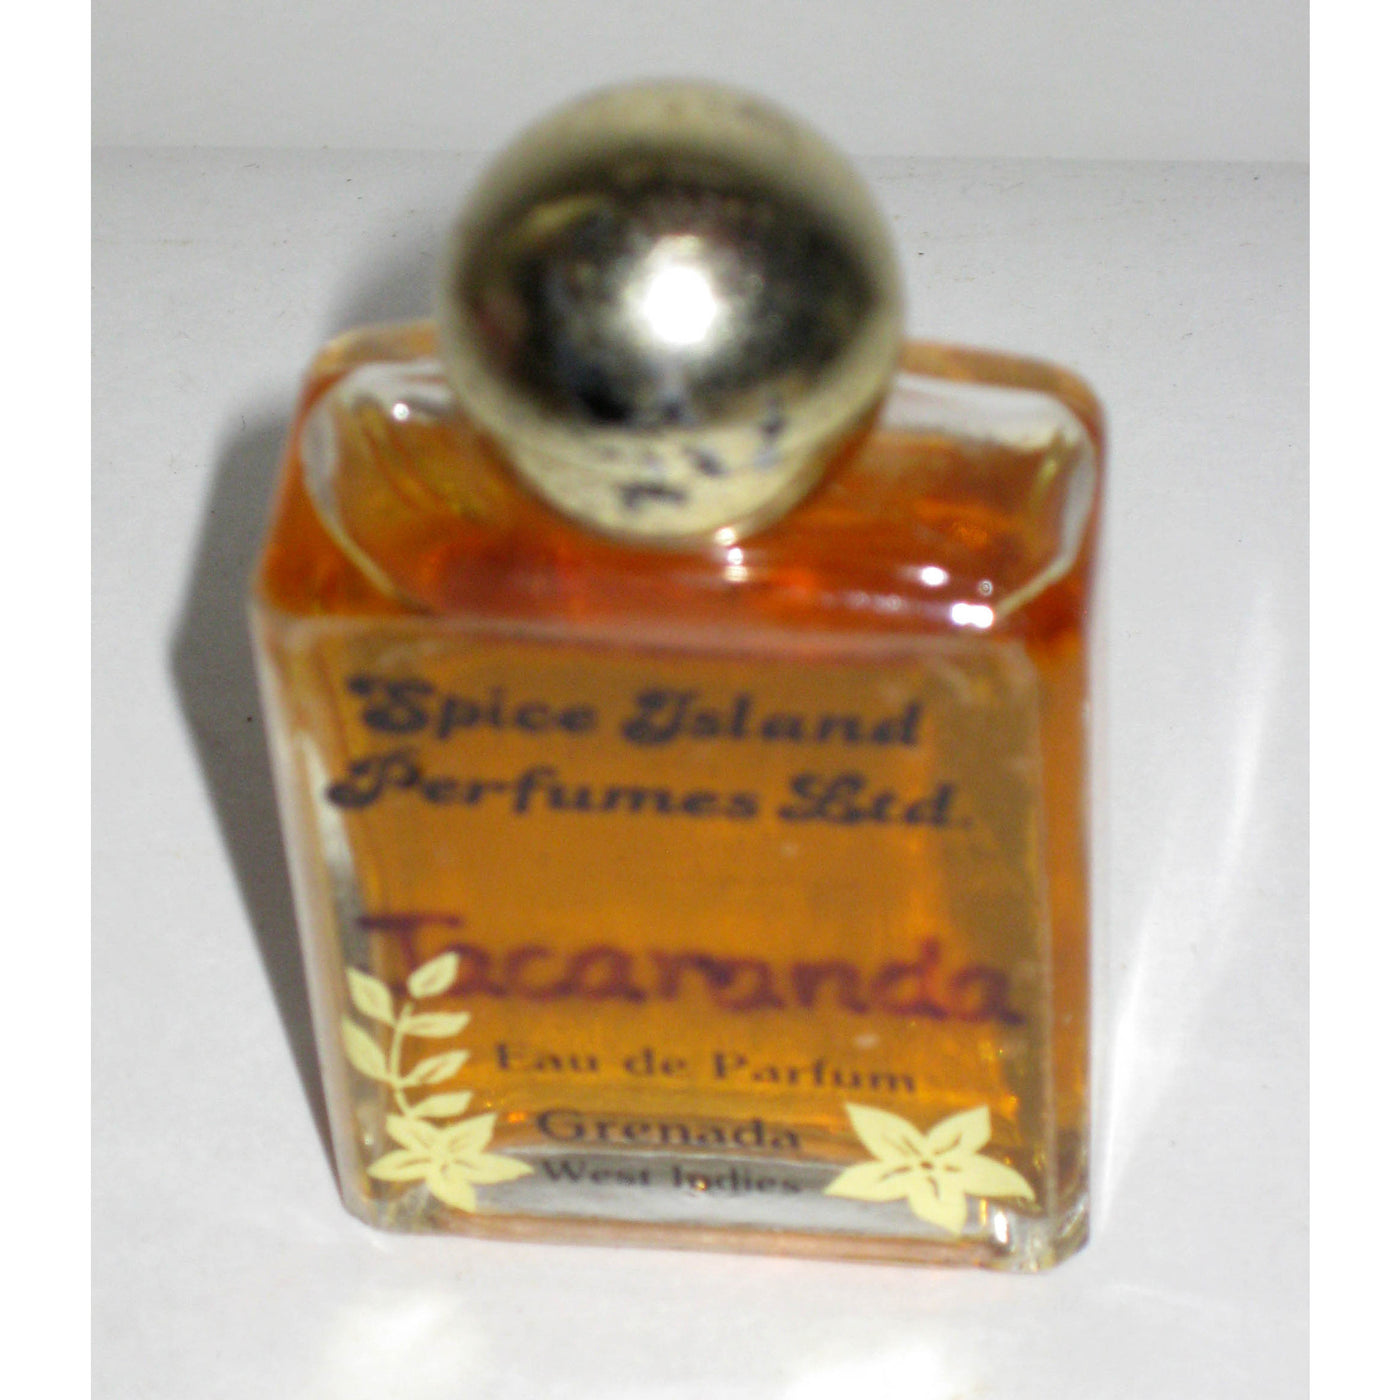 Vintage Spice Island Perfumes Ltd. Jacarand Eau De Parfum